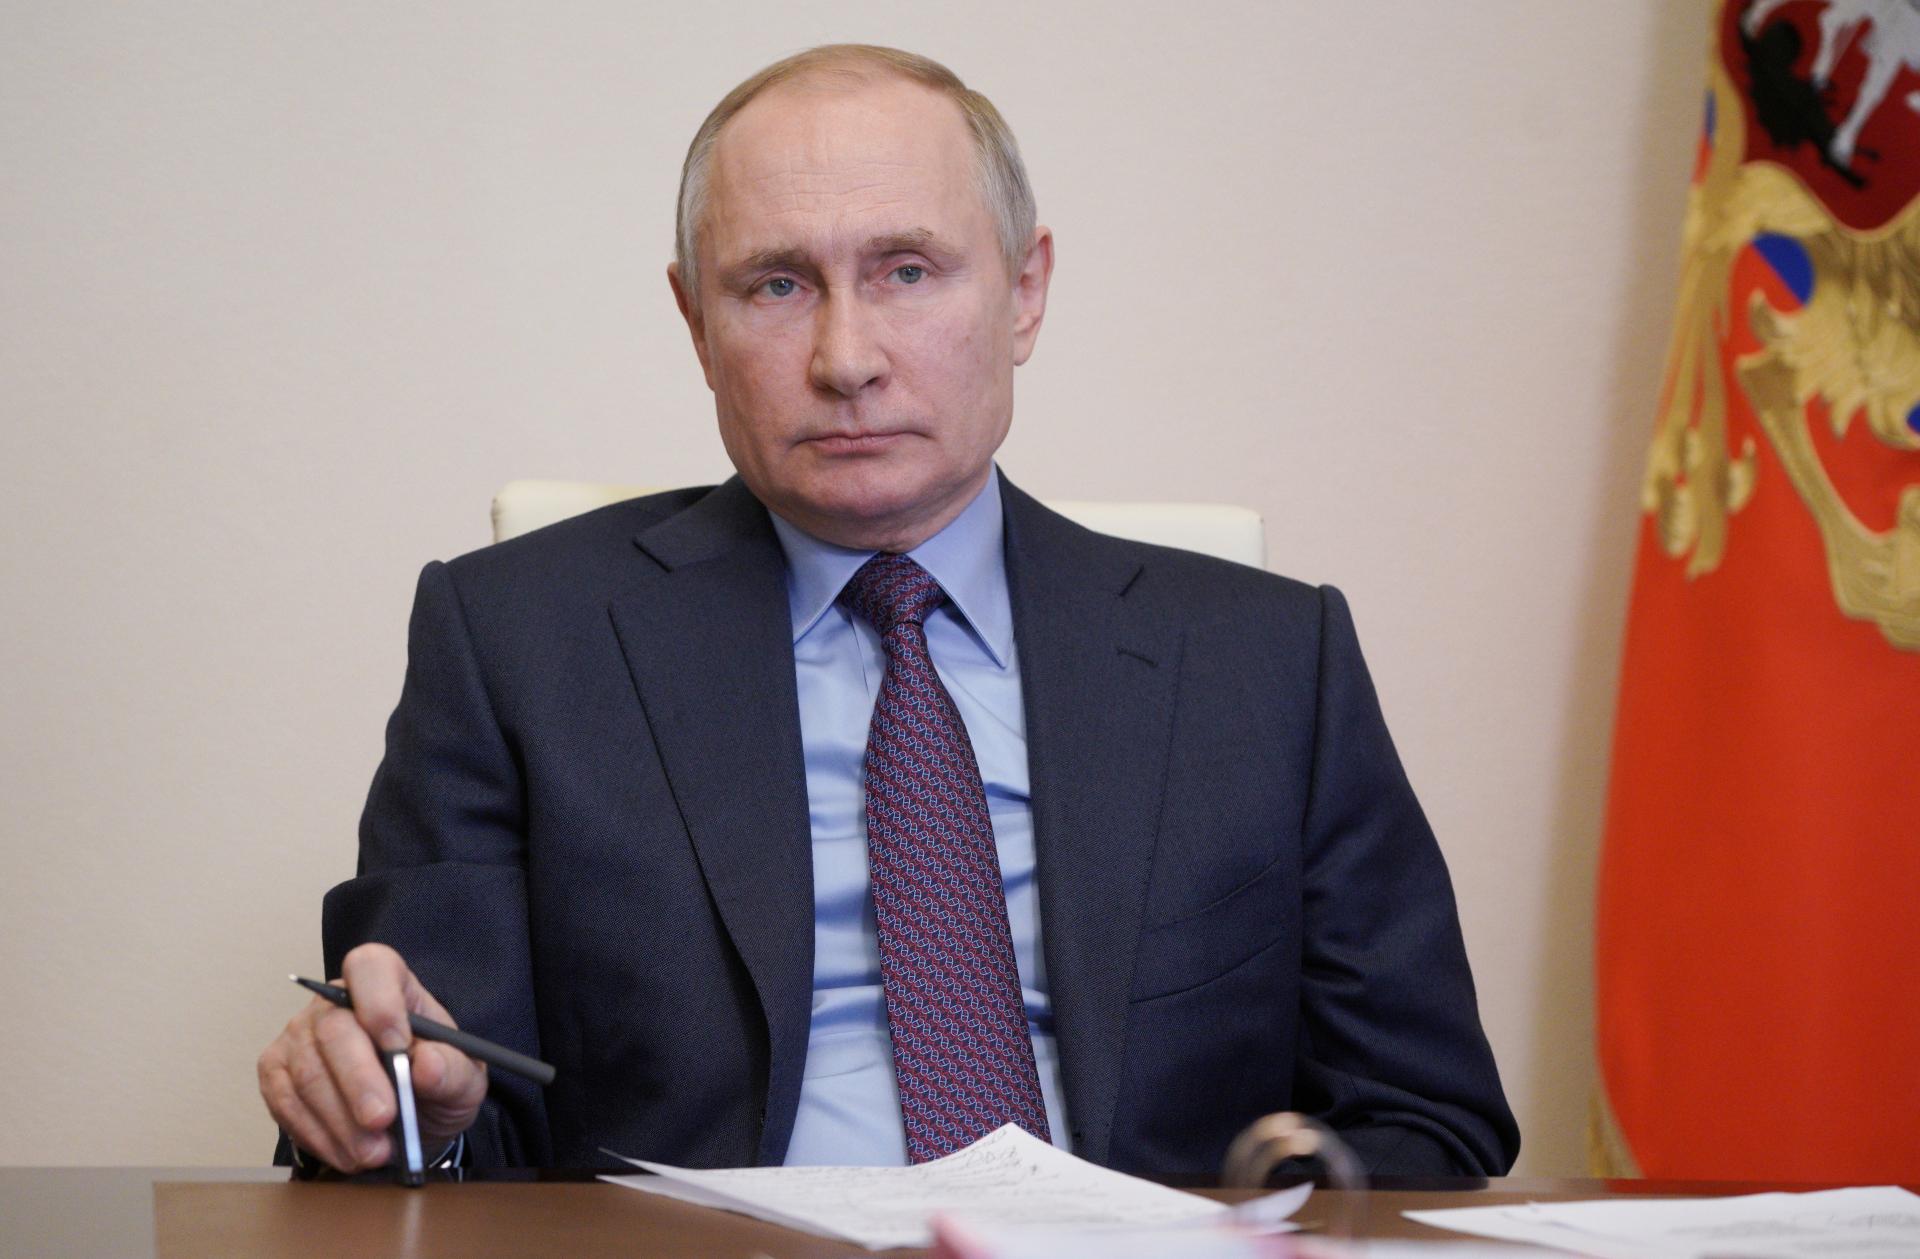 La partecipazione di Putin al vertice sul clima richiederà tempo per essere chiarita